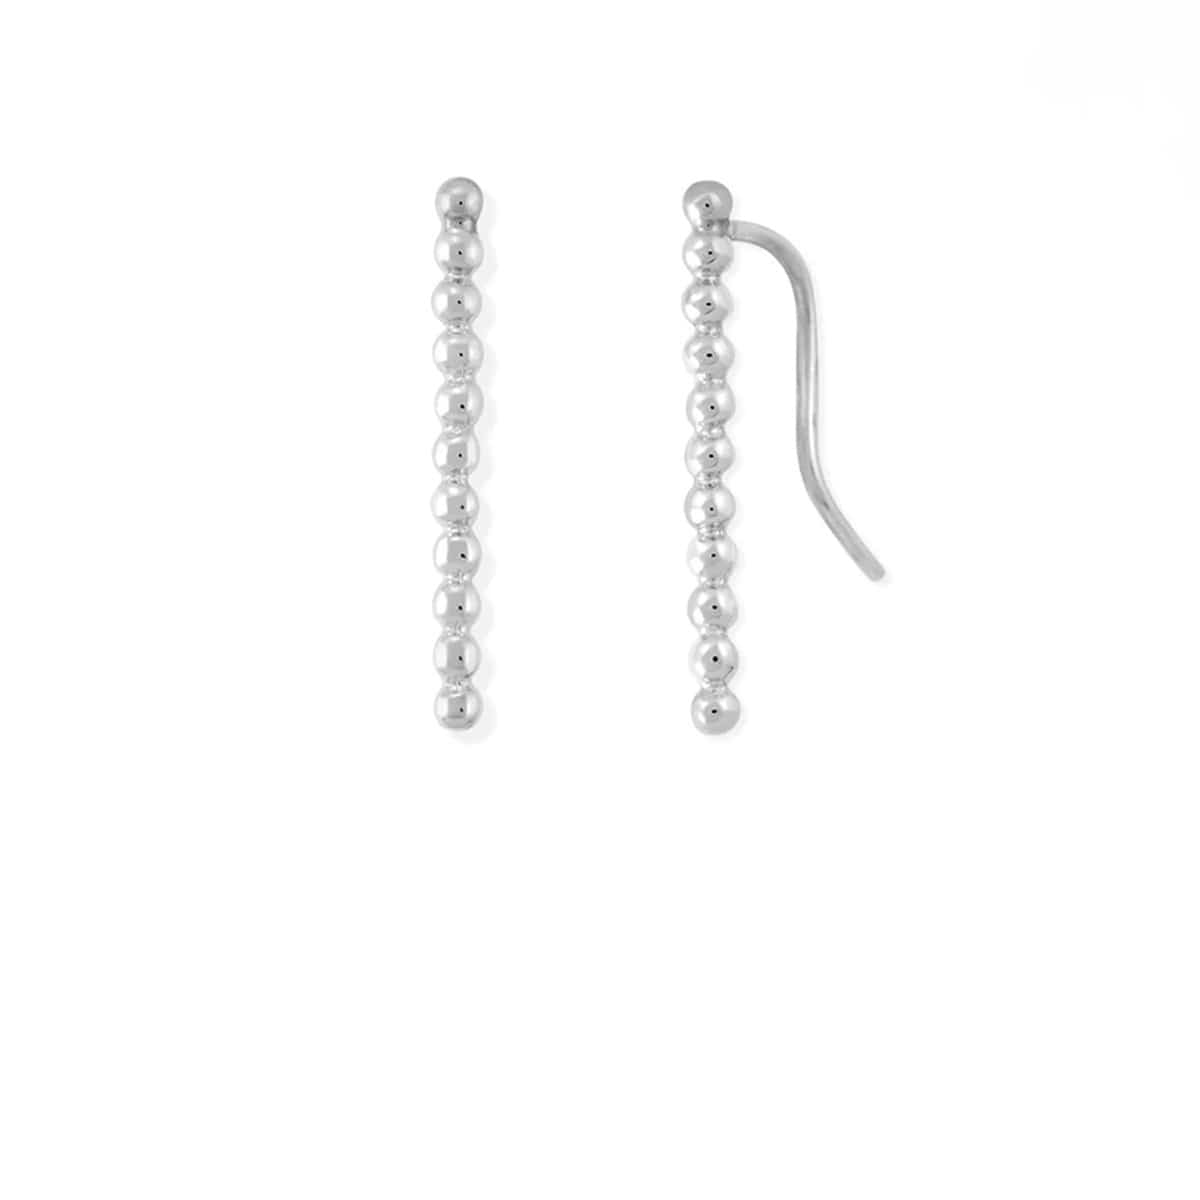 Boma Jewelry Earrings Sterling Silver Dot Long Bar Ear Crawlers